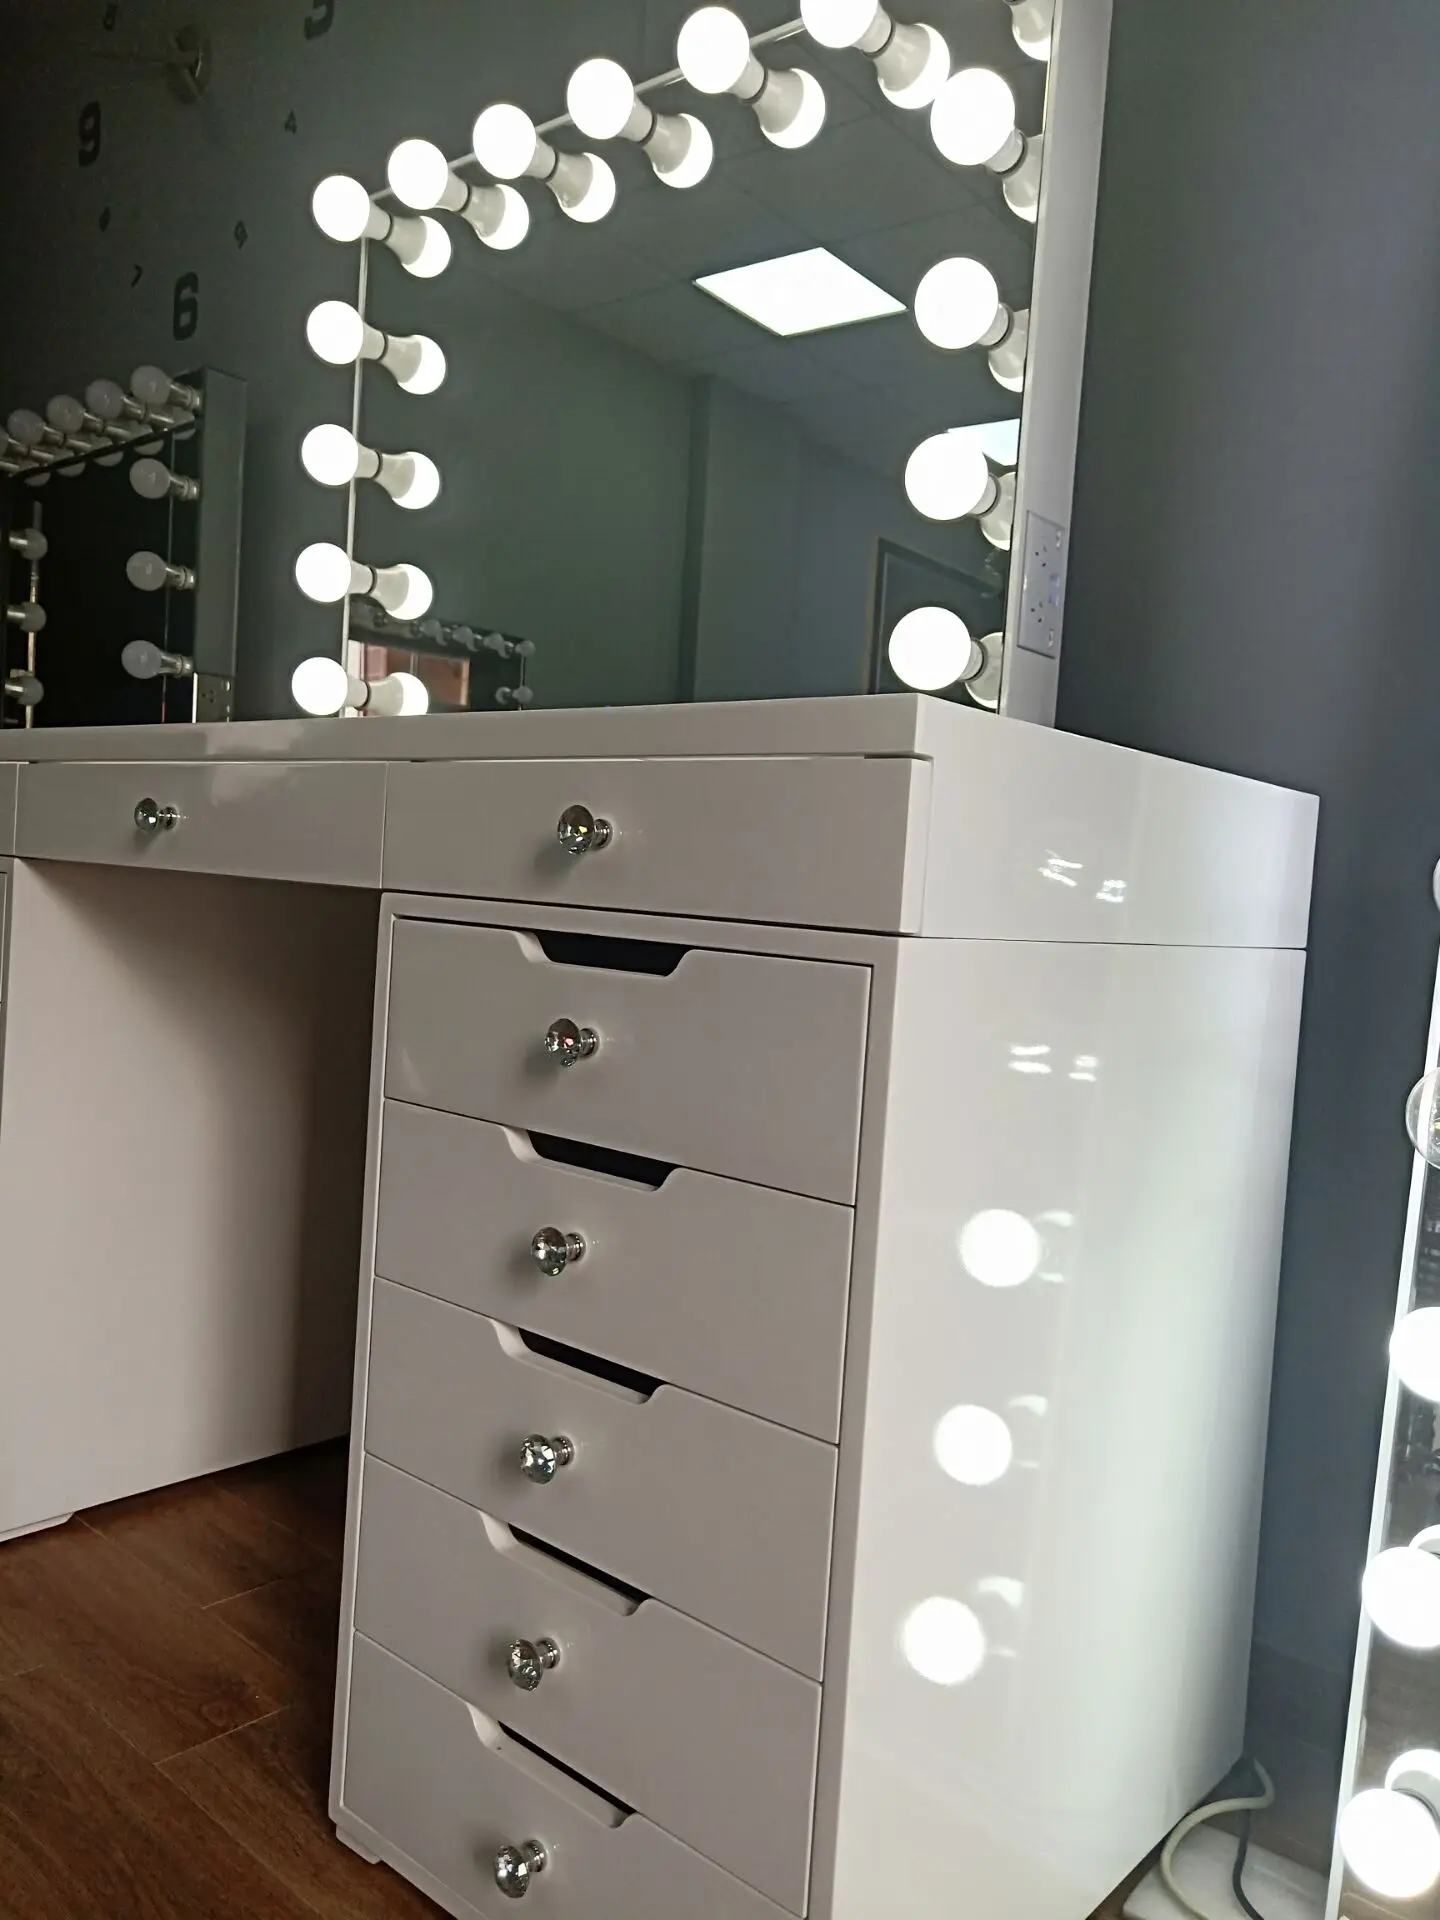 Luna Vanity Station Dressing Table – Vanity Mirror MY